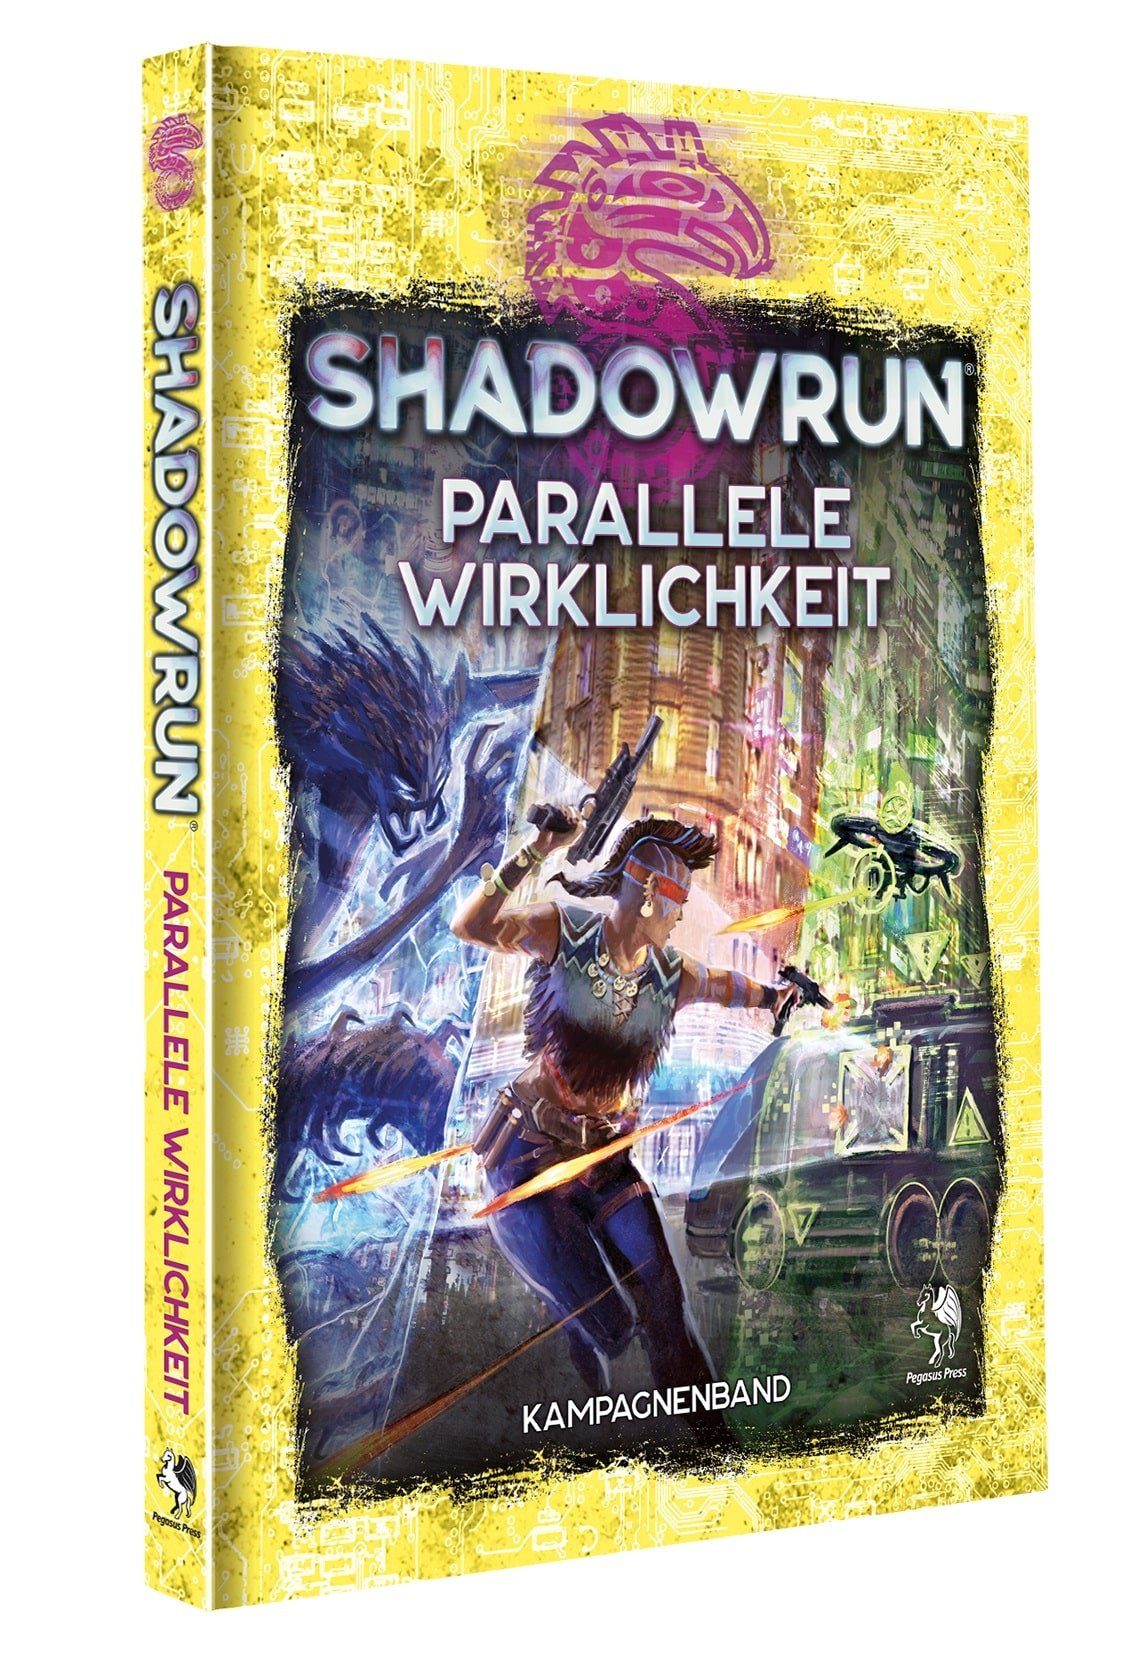 (Hardcover) Spiel, Pegasus Parallele Shadowrun: Wirklichkeit Spiele